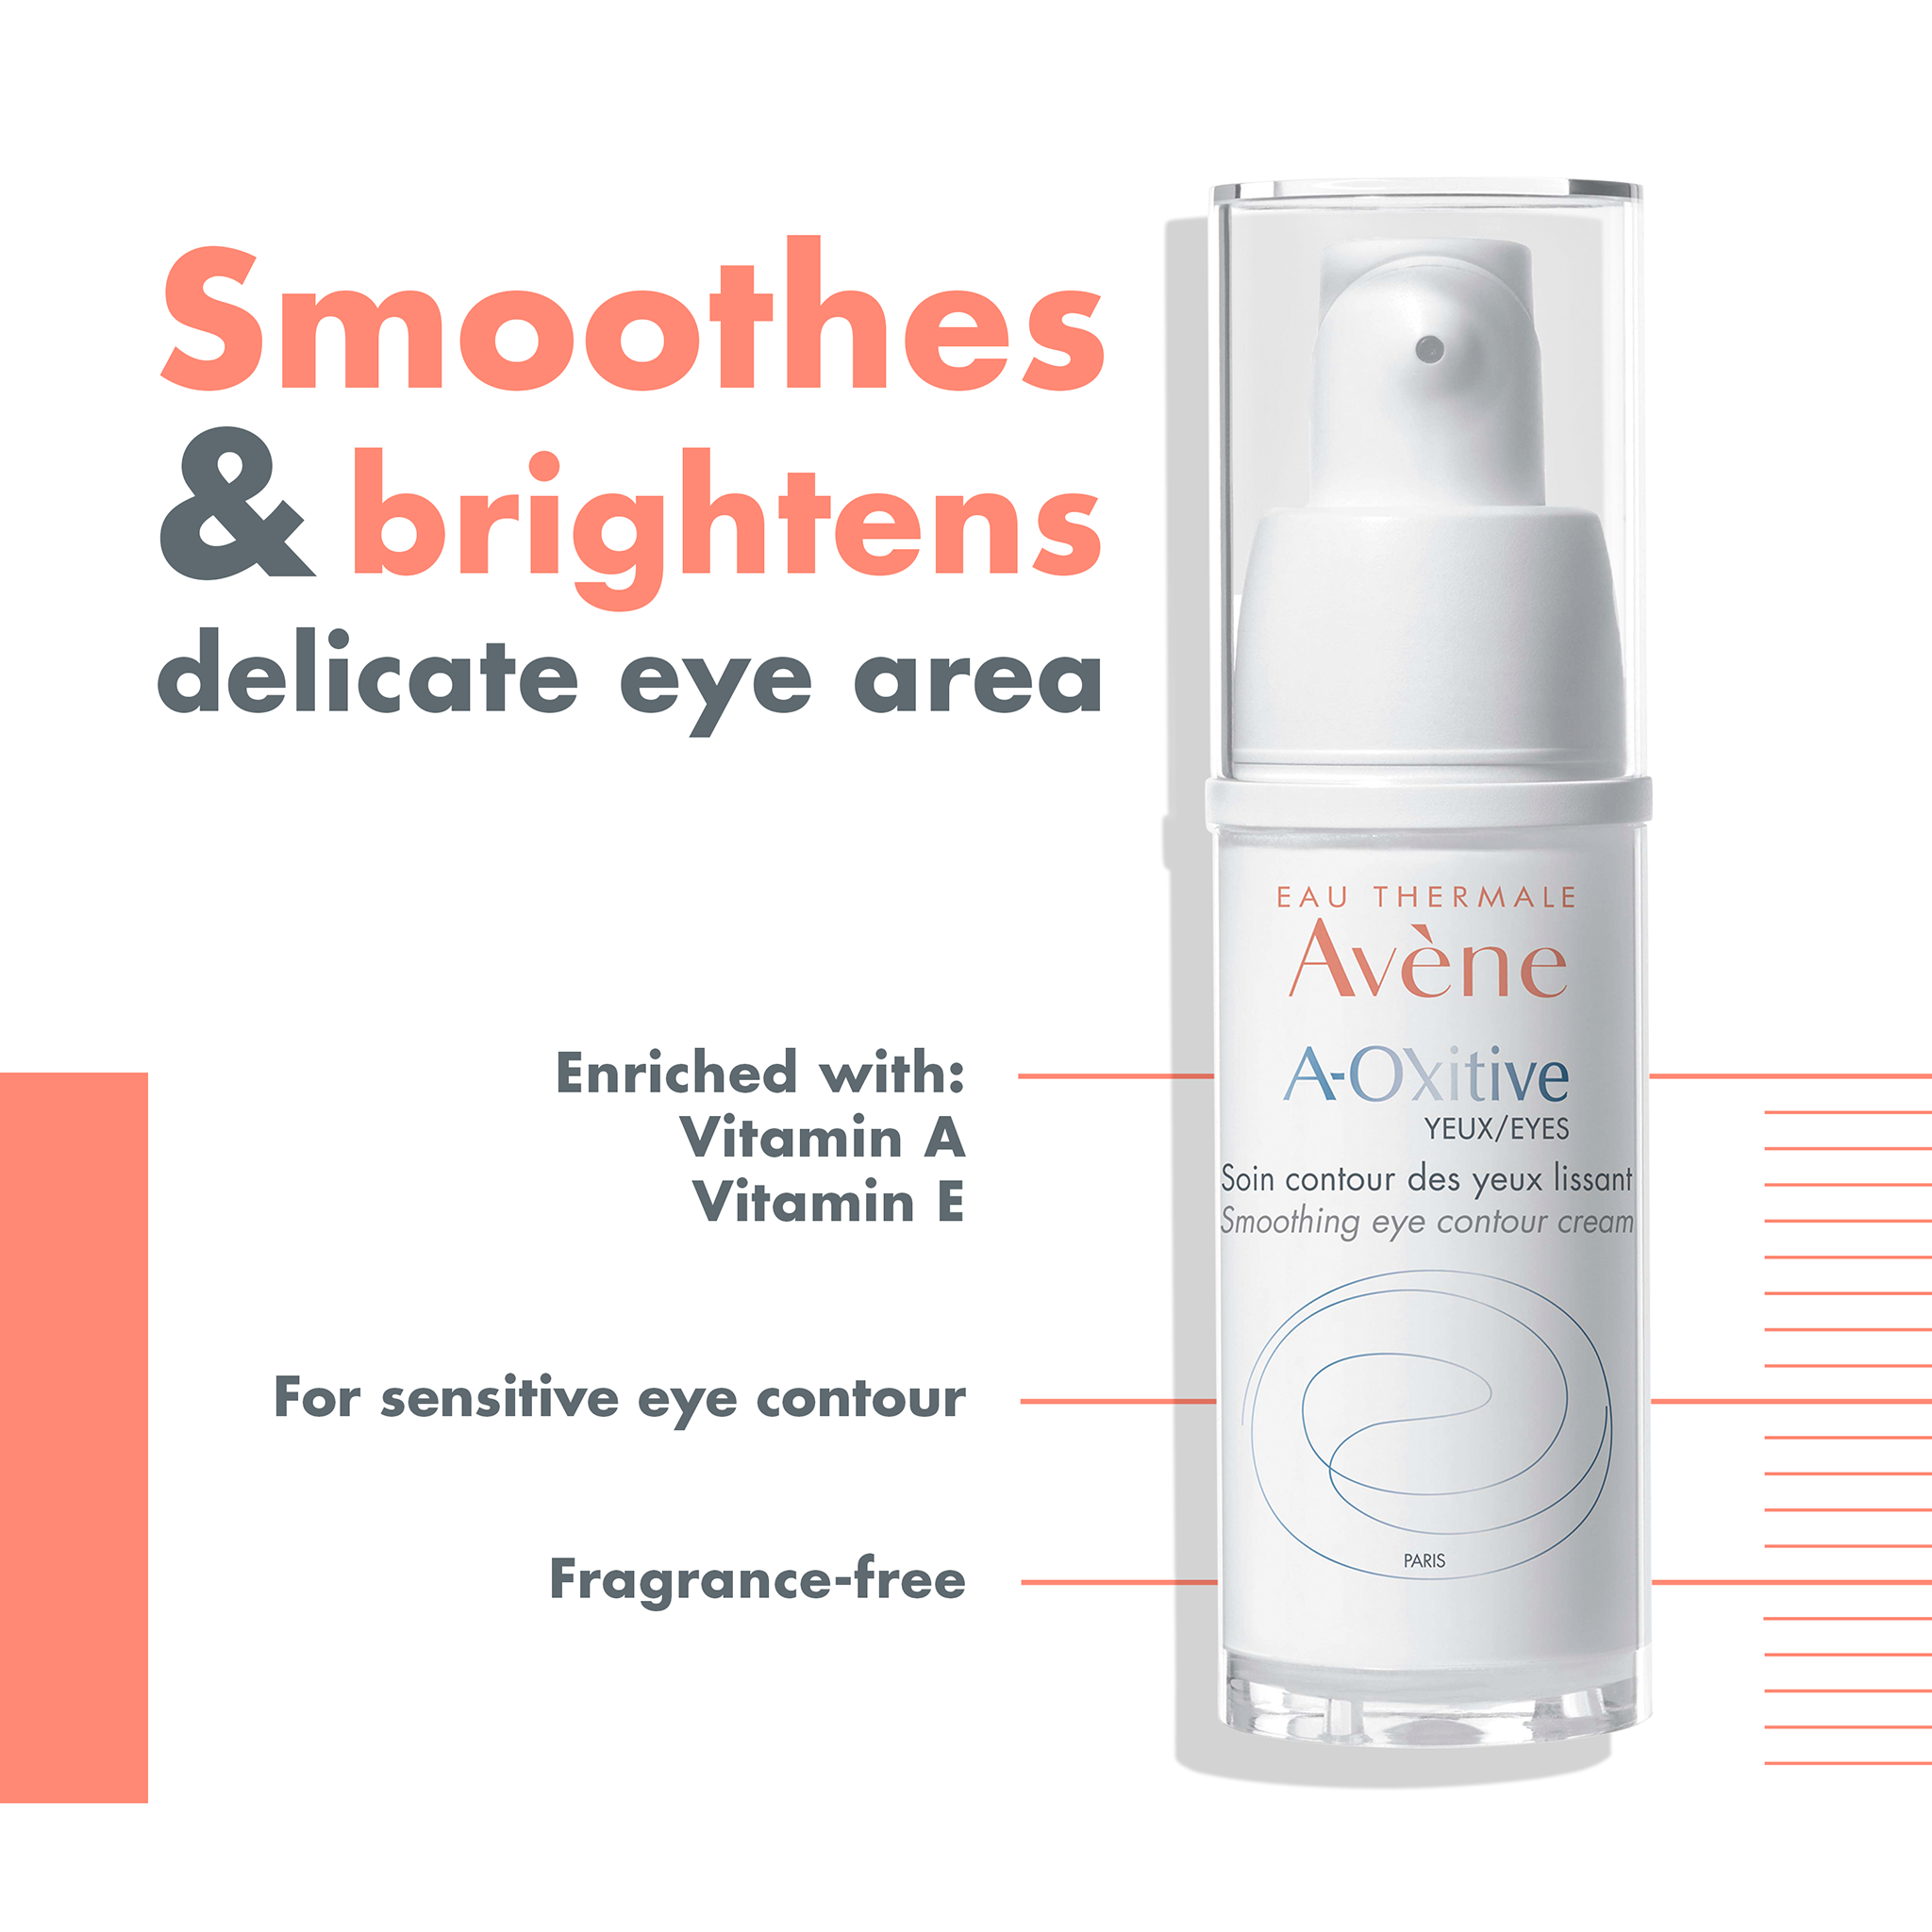 Avène A-Oxitive EYES Smoothing Eye Contour Cream 15ml - Vitamin A Eye Cream